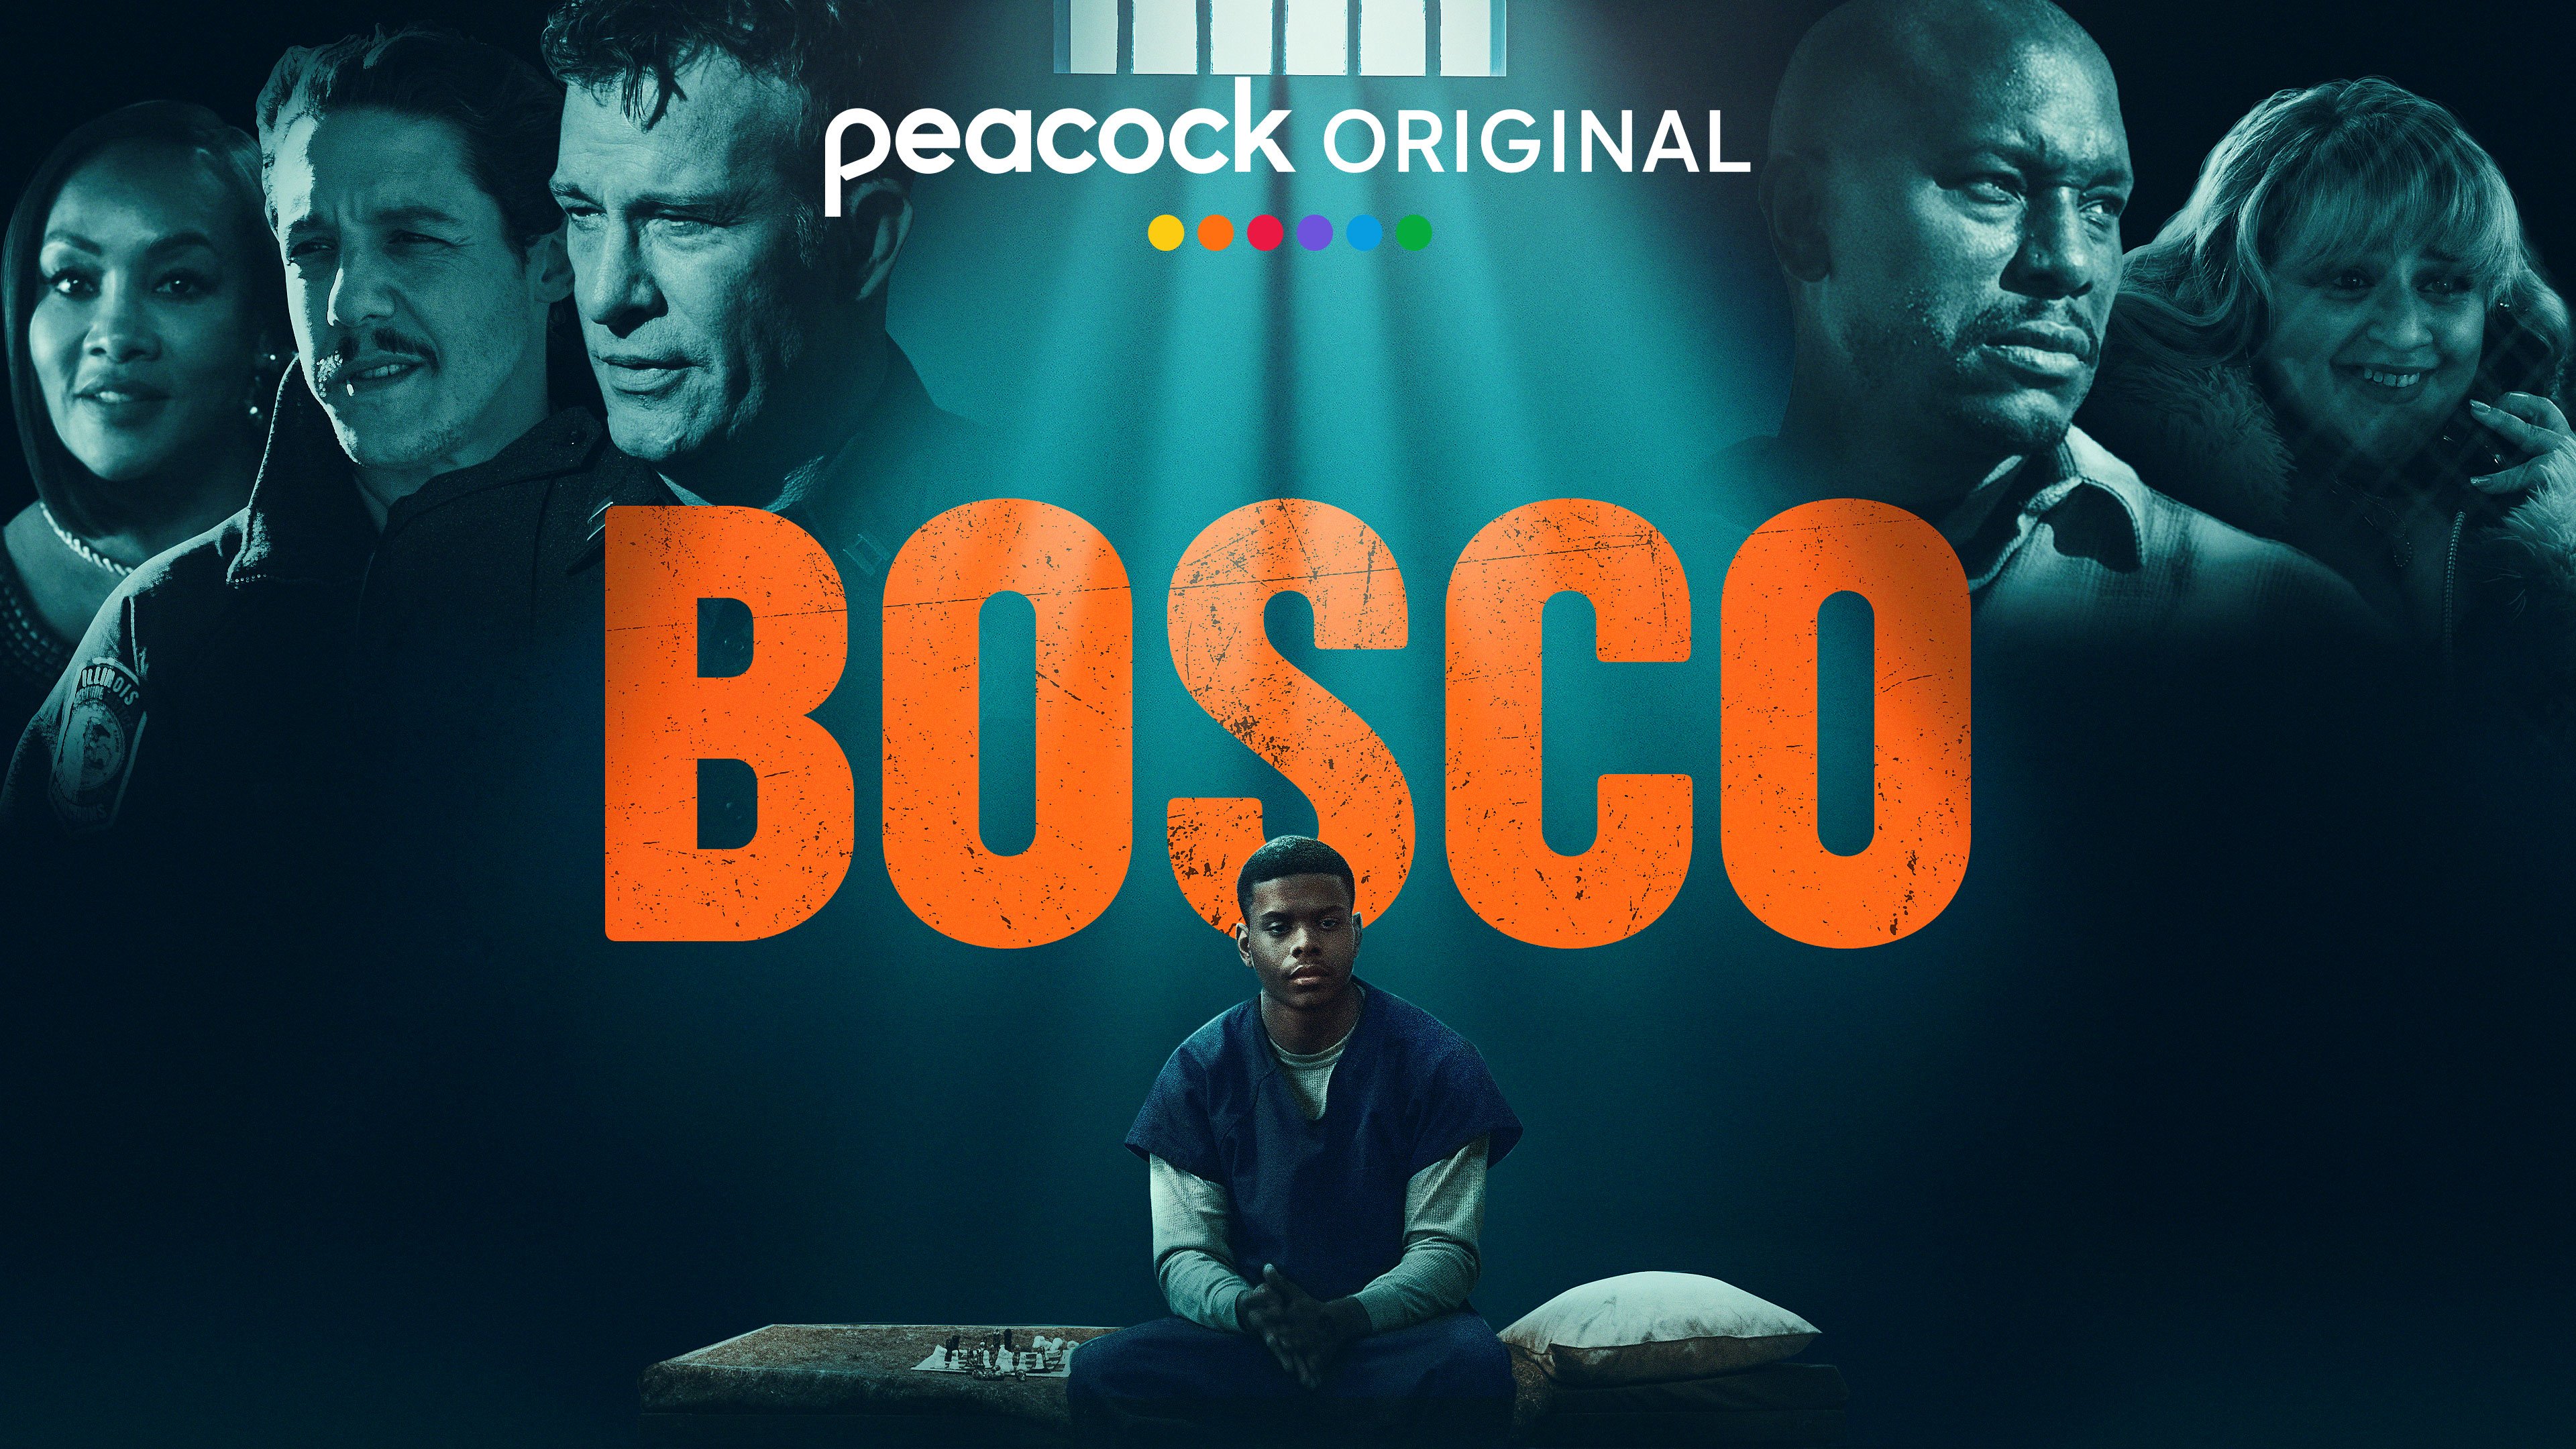 RouteNote distributes the soundtrack to Bosco